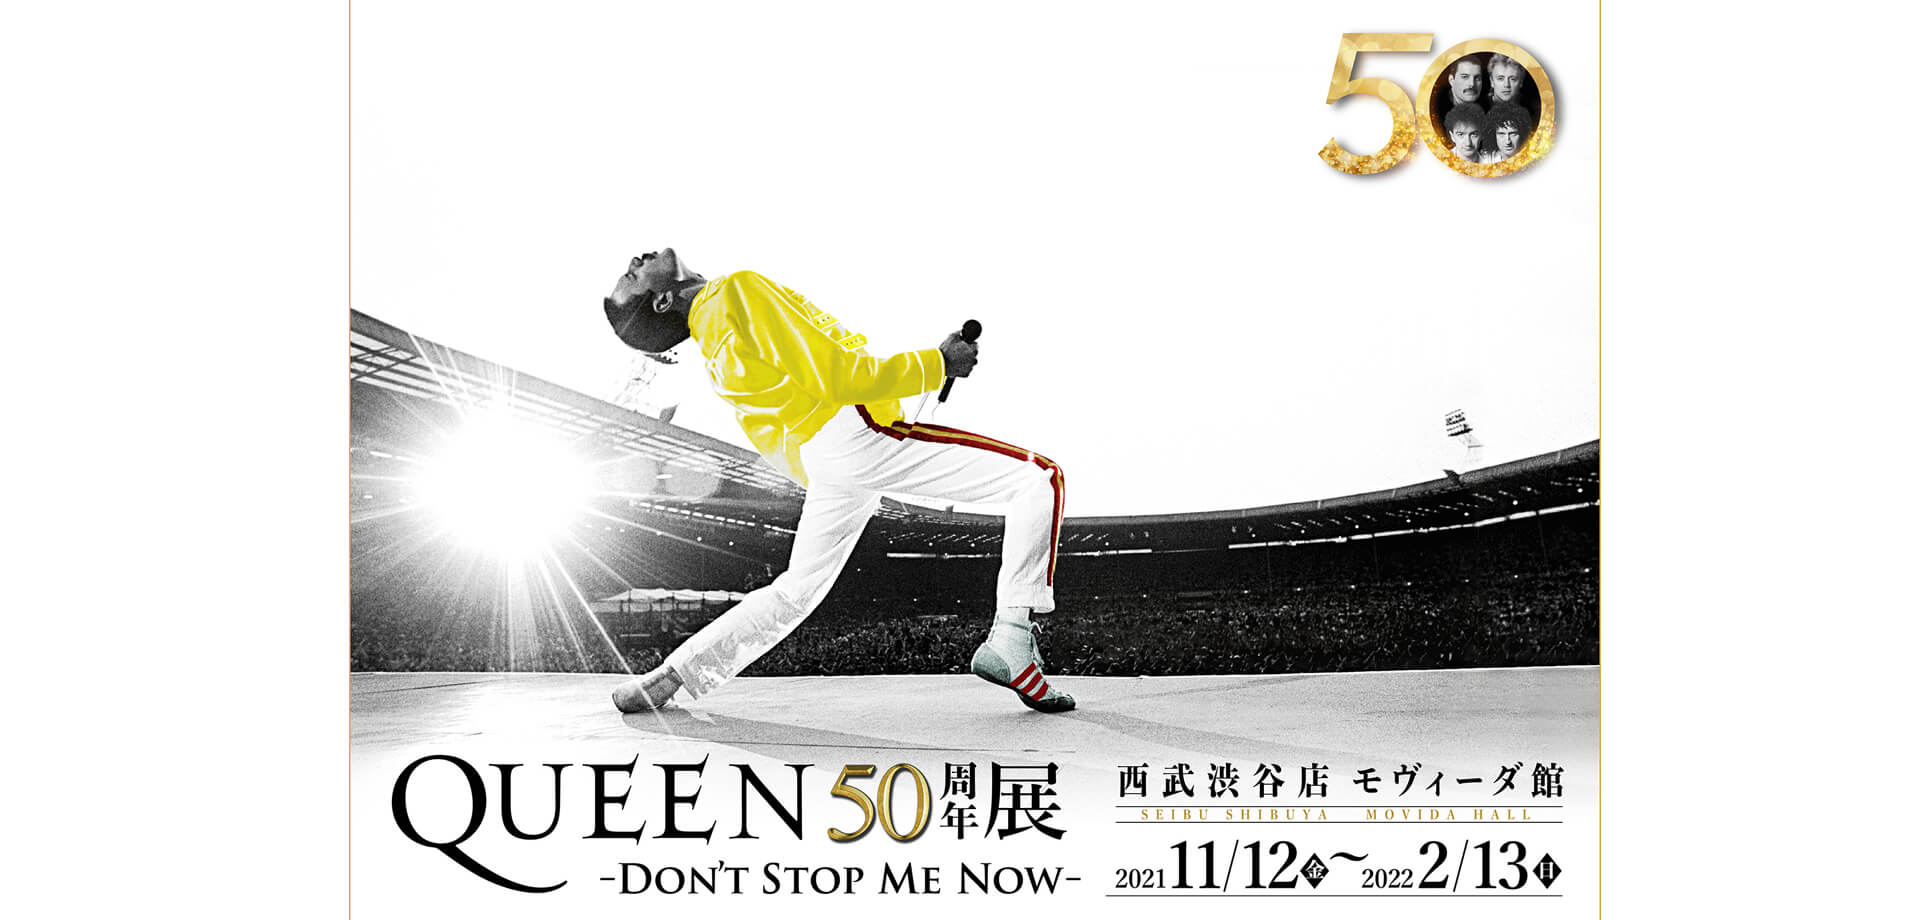 QUEEN50周年展 -DON’T STOP ME NOW- 西武渋谷店 モヴィーダ館